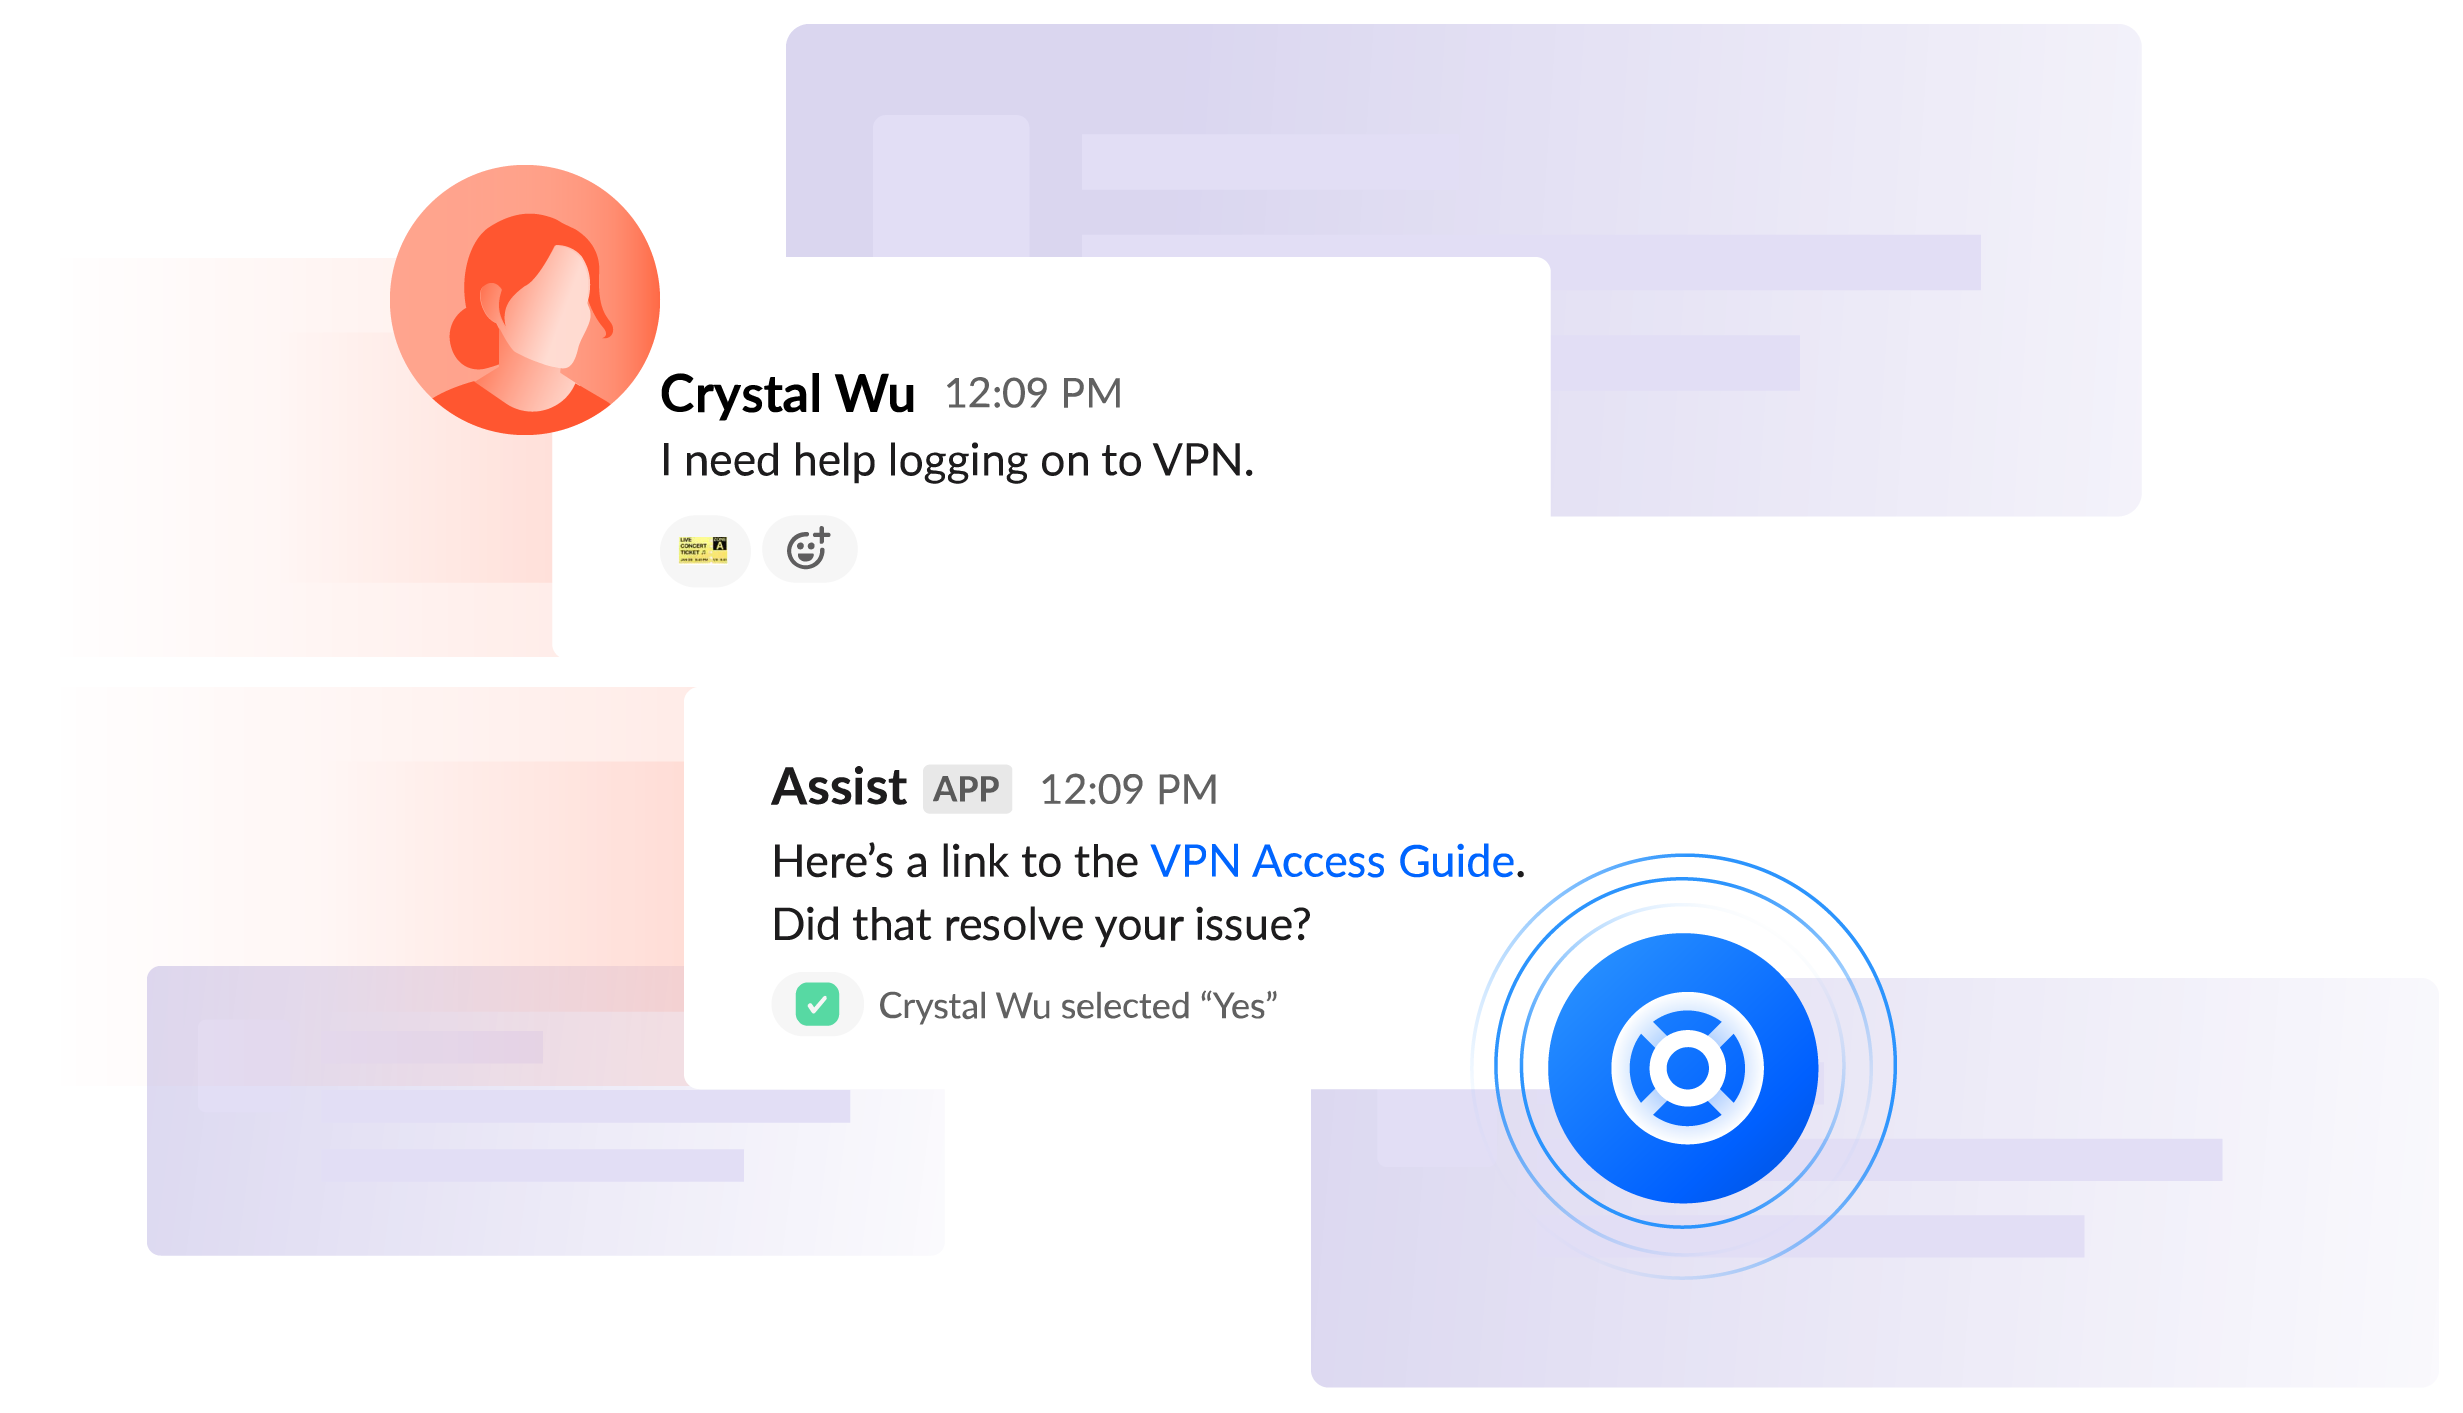 Slack-Chat "Ich brauche Hilfe beim Einloggen im VPN" – Crystal; "Hier ist ein Link zur Anleitung, wie man sich im VPN anmeldet.Konntest du damit dein Problem lösen?" – Assist